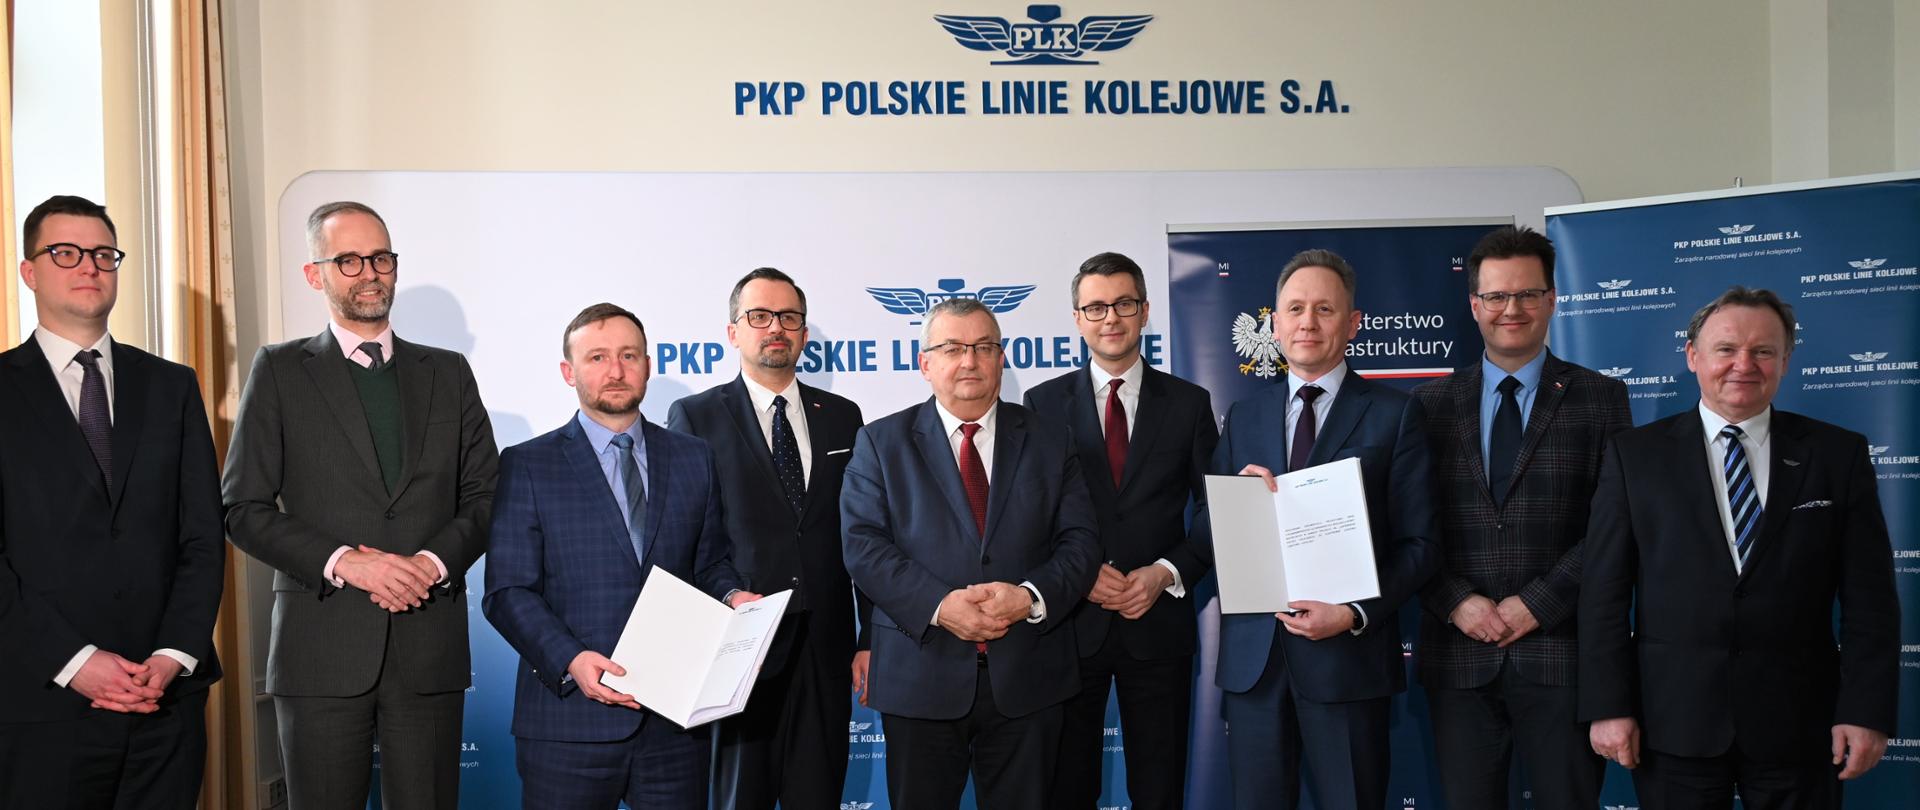 PKP Polskie Linie Kolejowe S.A. podpisały umowę na wykonanie dokumentacji projektowej dla modernizacji i budowy linii kolejowych prowadzących do planowanej elektrowni jądrowej Lubiatowo – Kopalino